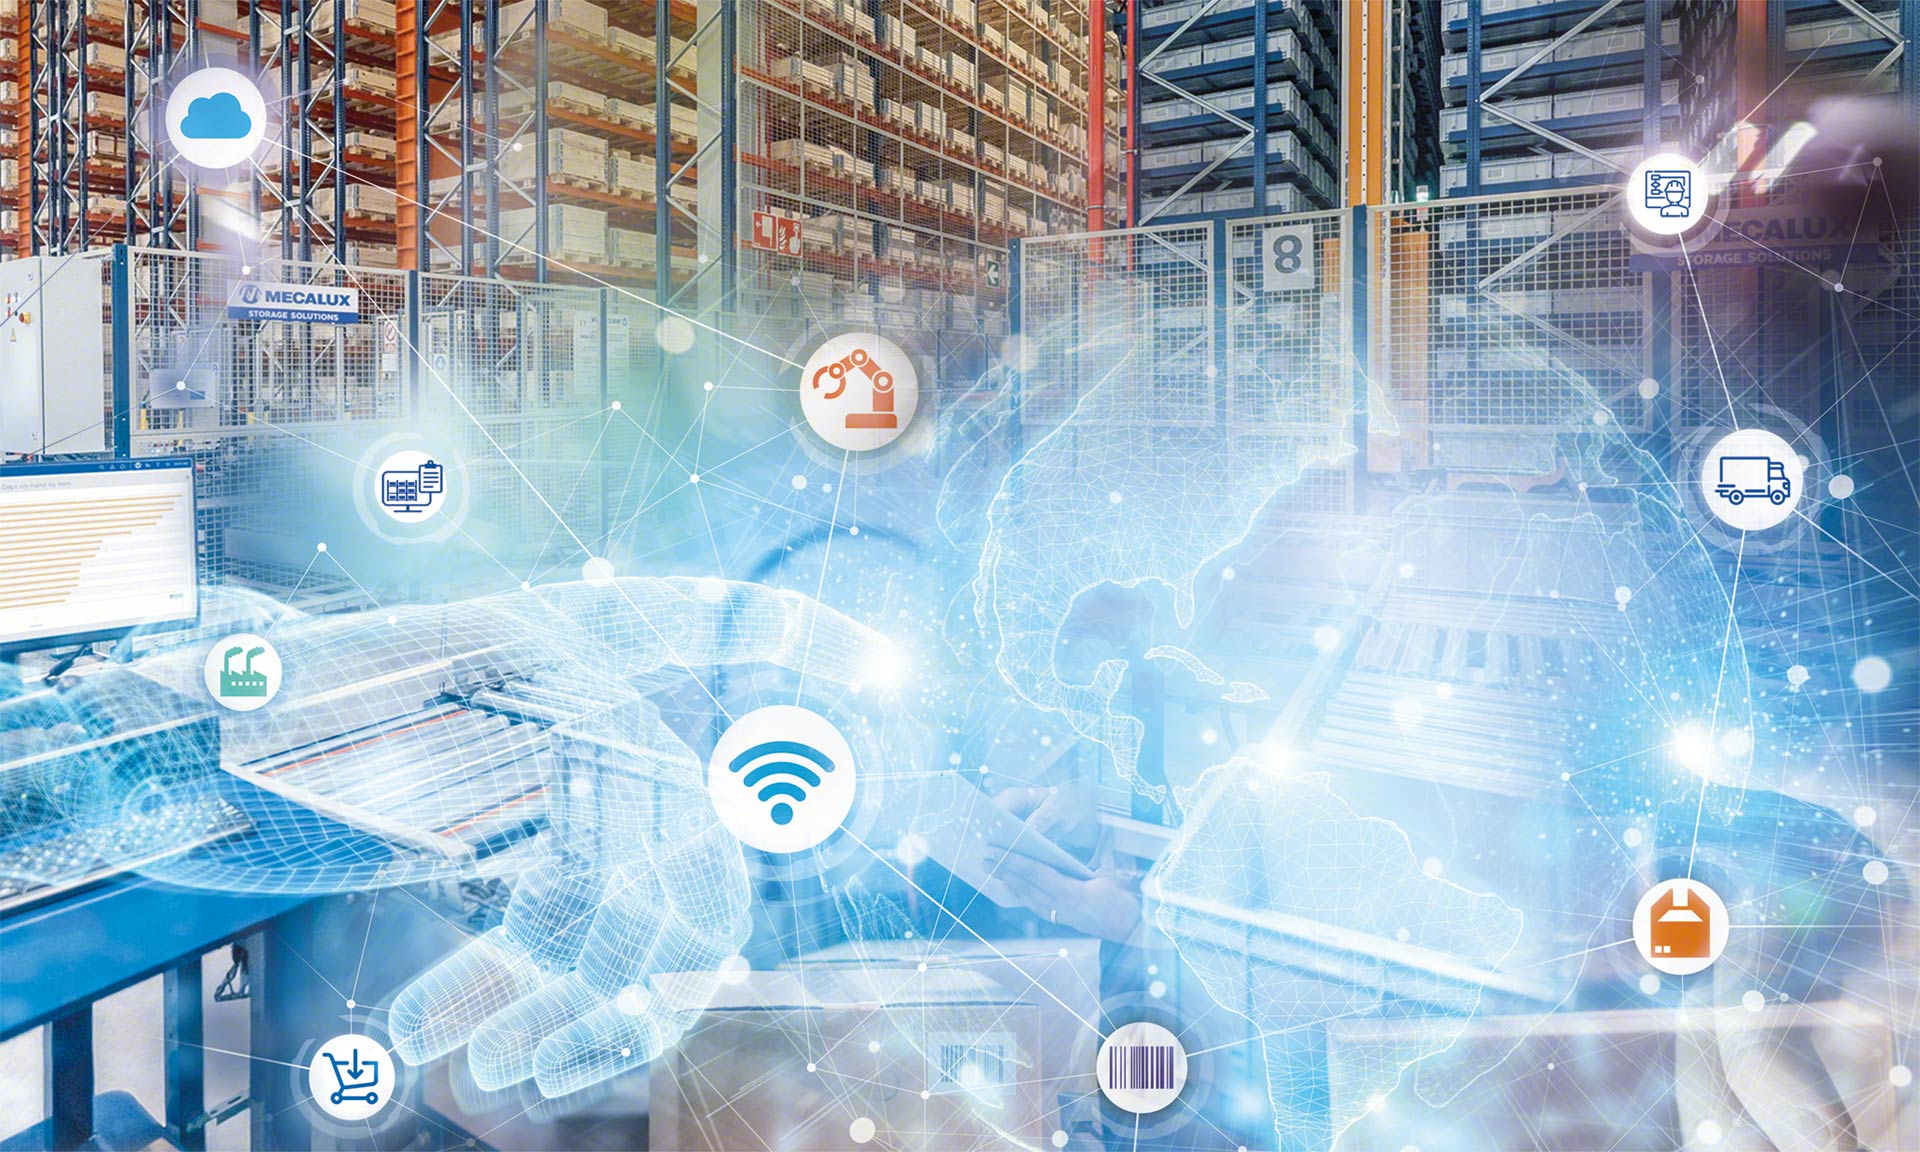 La tecnologia di automazione dei magazzini consiste nell'implementare sistemi robotici di stoccaggio e trasporto interno